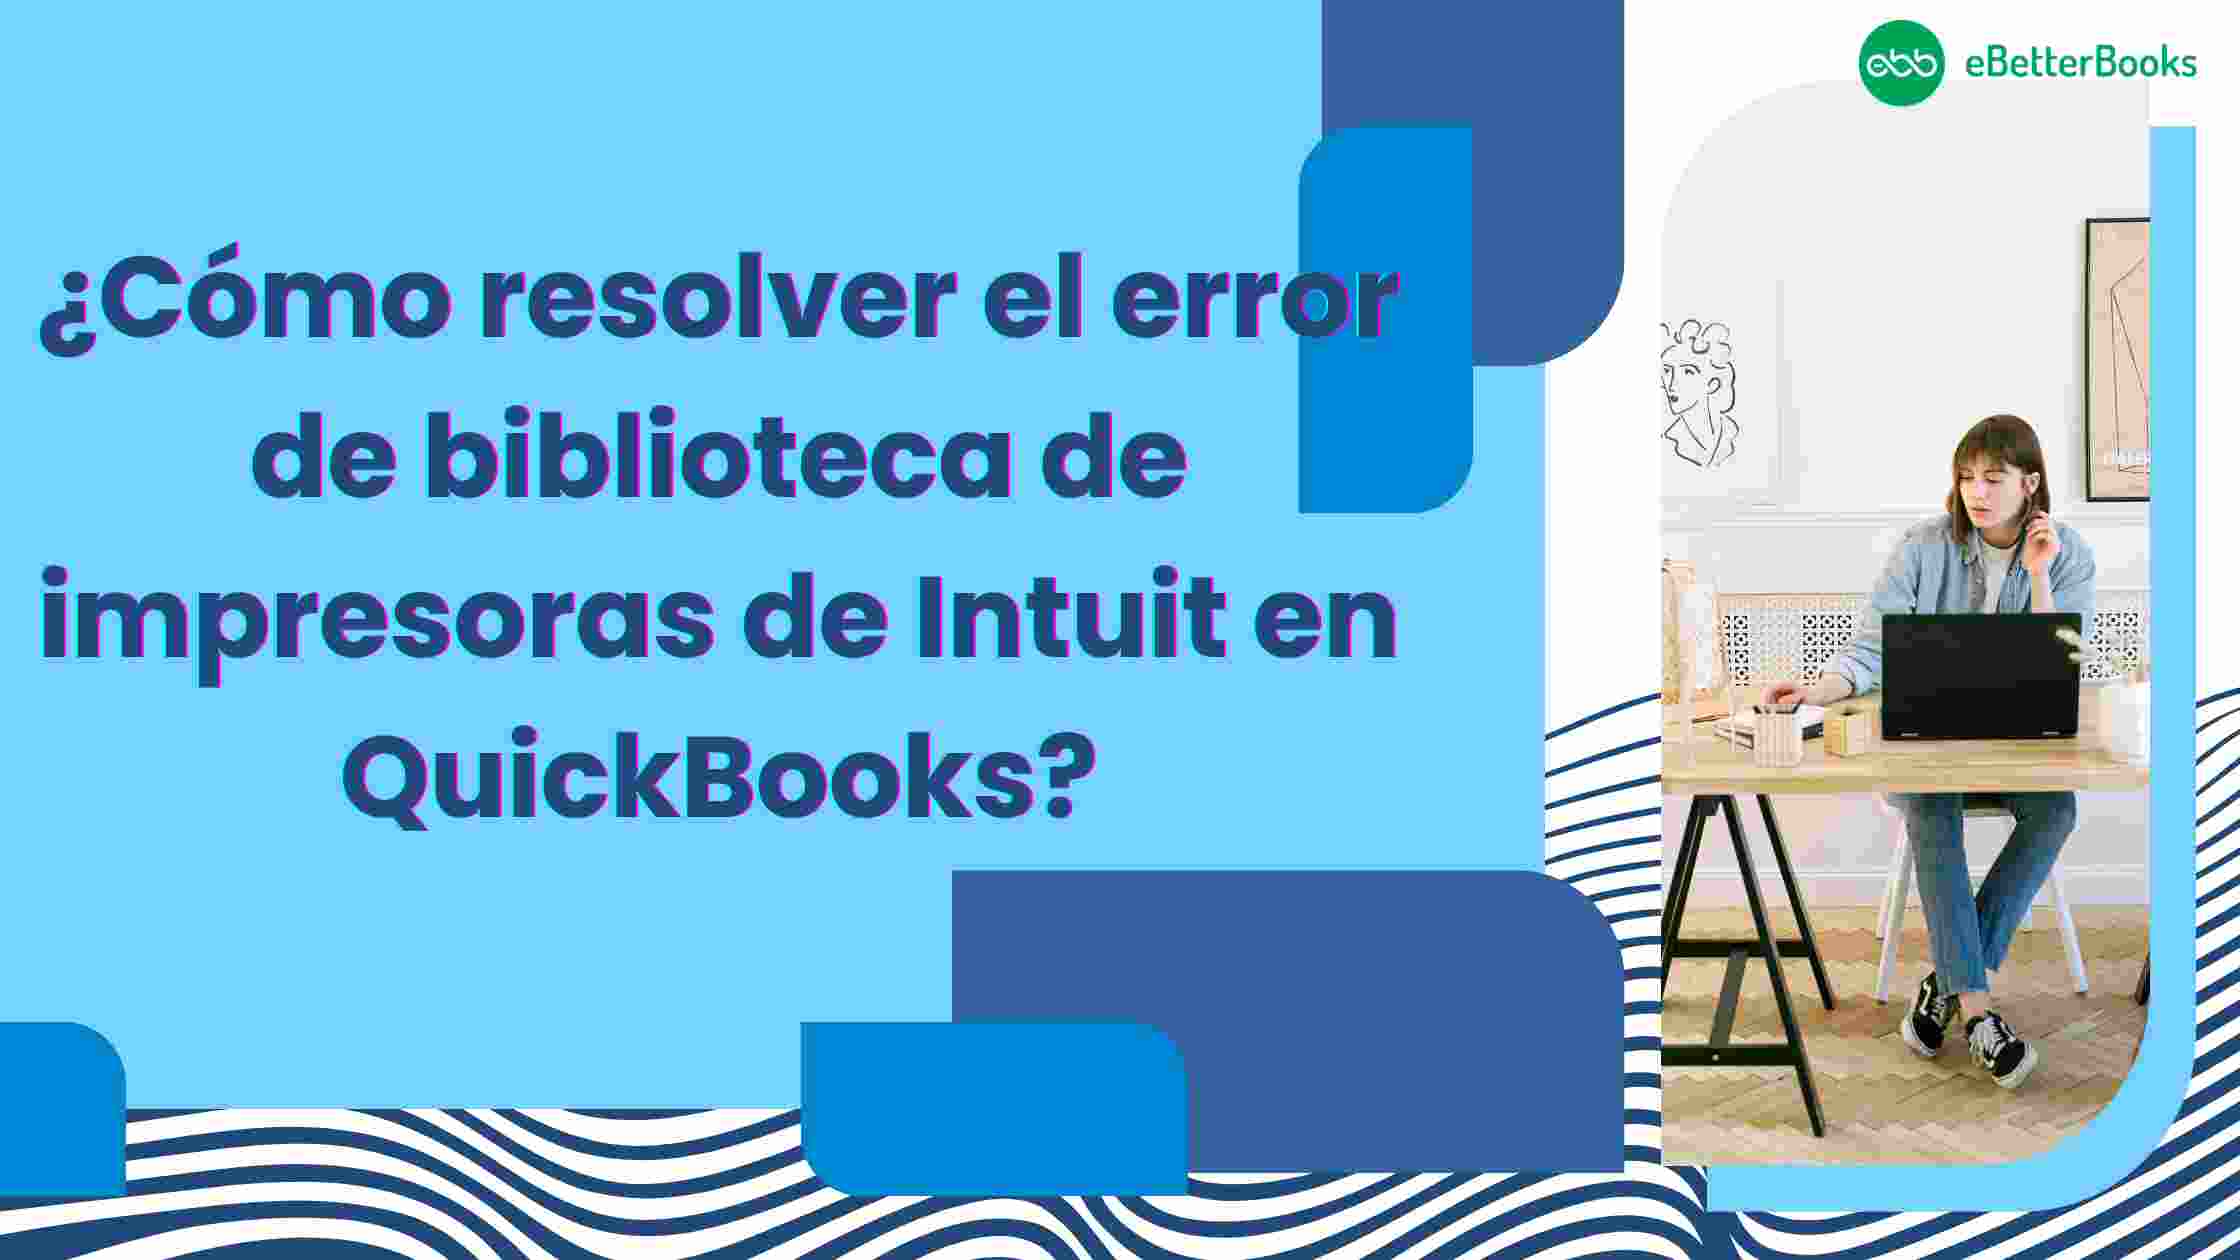 ¿Cómo resolver el error de biblioteca de impresoras de Intuit en QuickBooks?